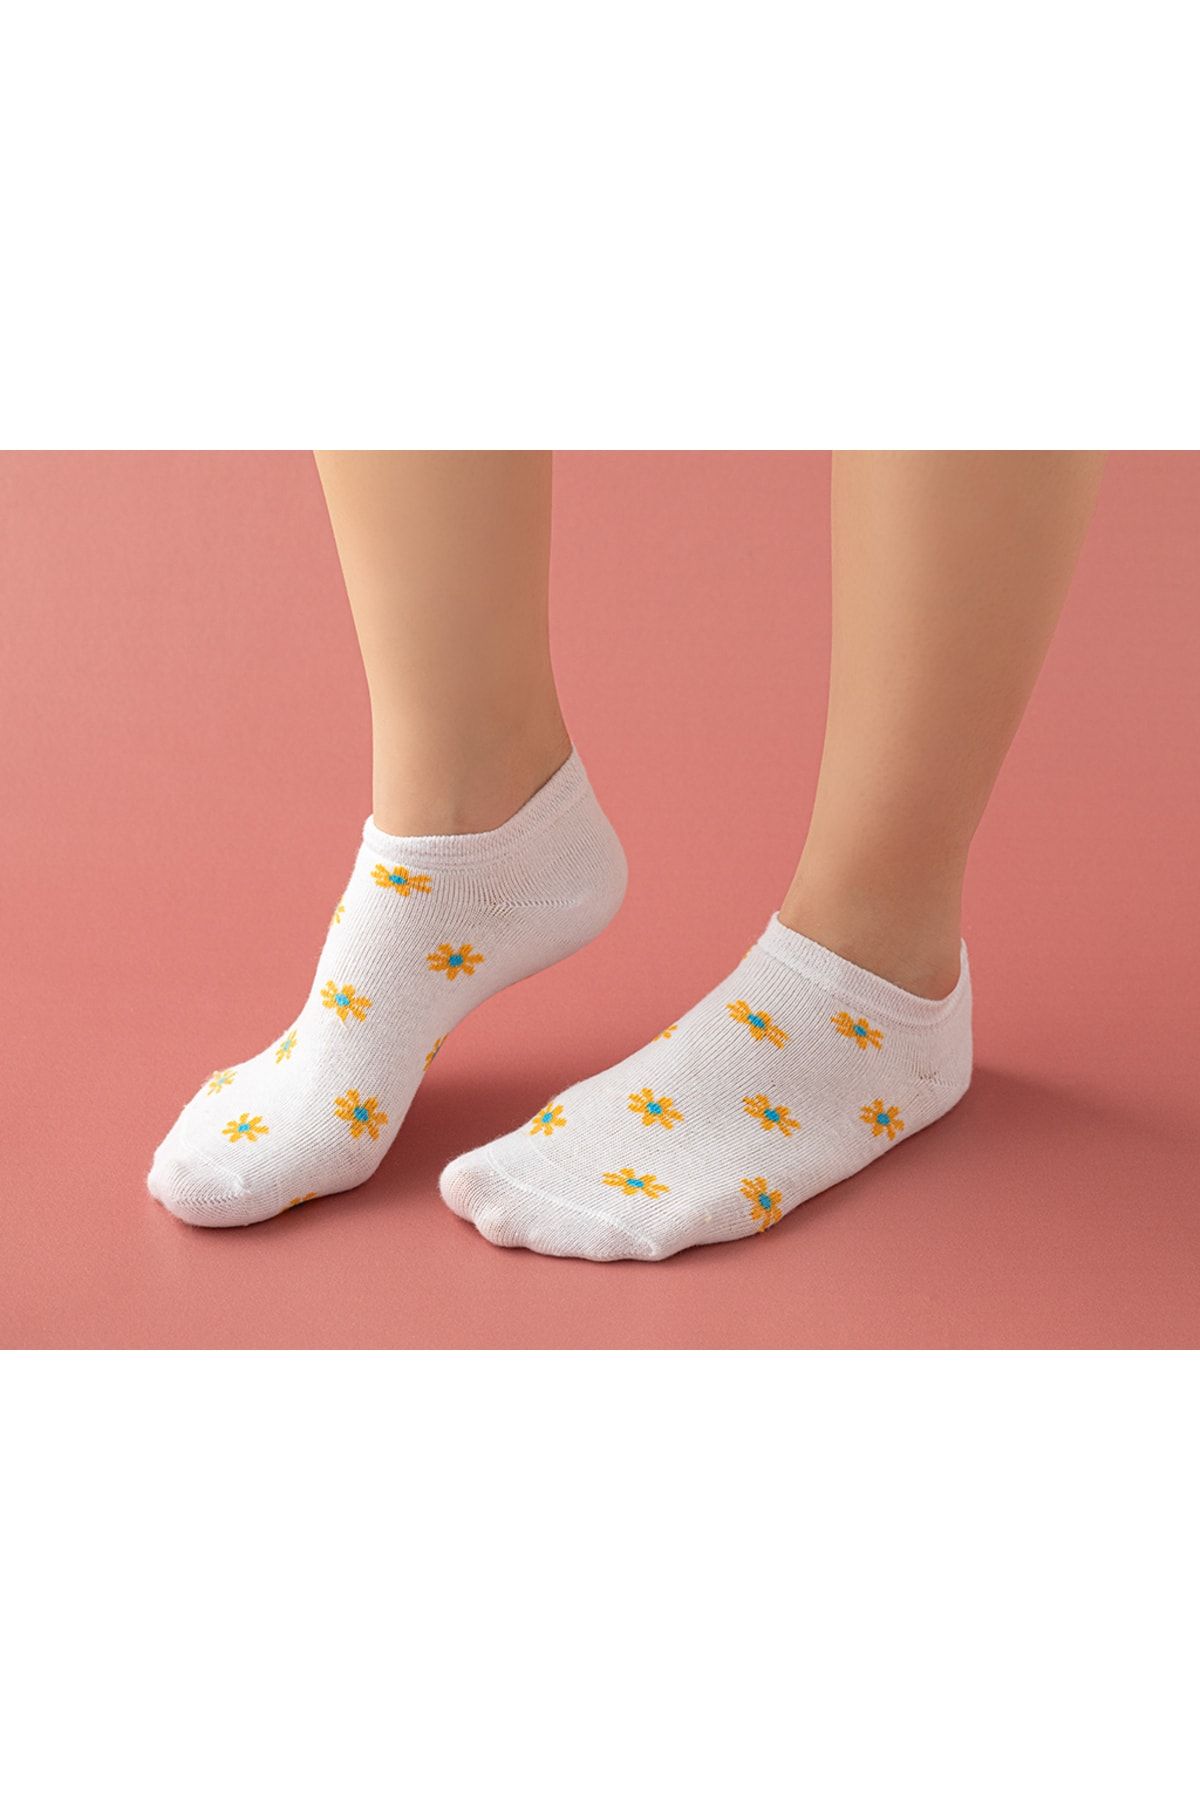 English Home Romy Pamuk Kadın 3'lü Patik Çorap 36-40 Ekru-beyaz-sarı